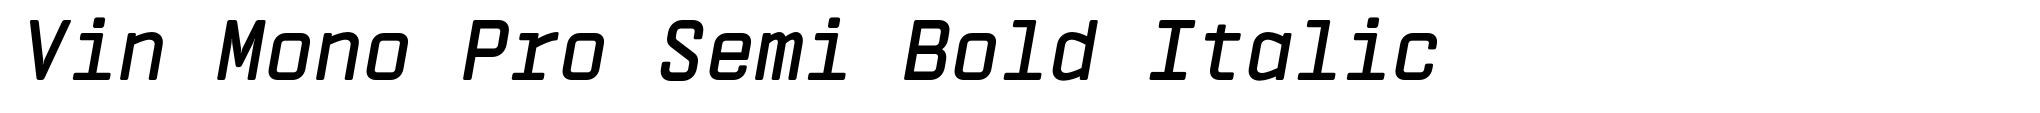 Vin Mono Pro Semi Bold Italic image